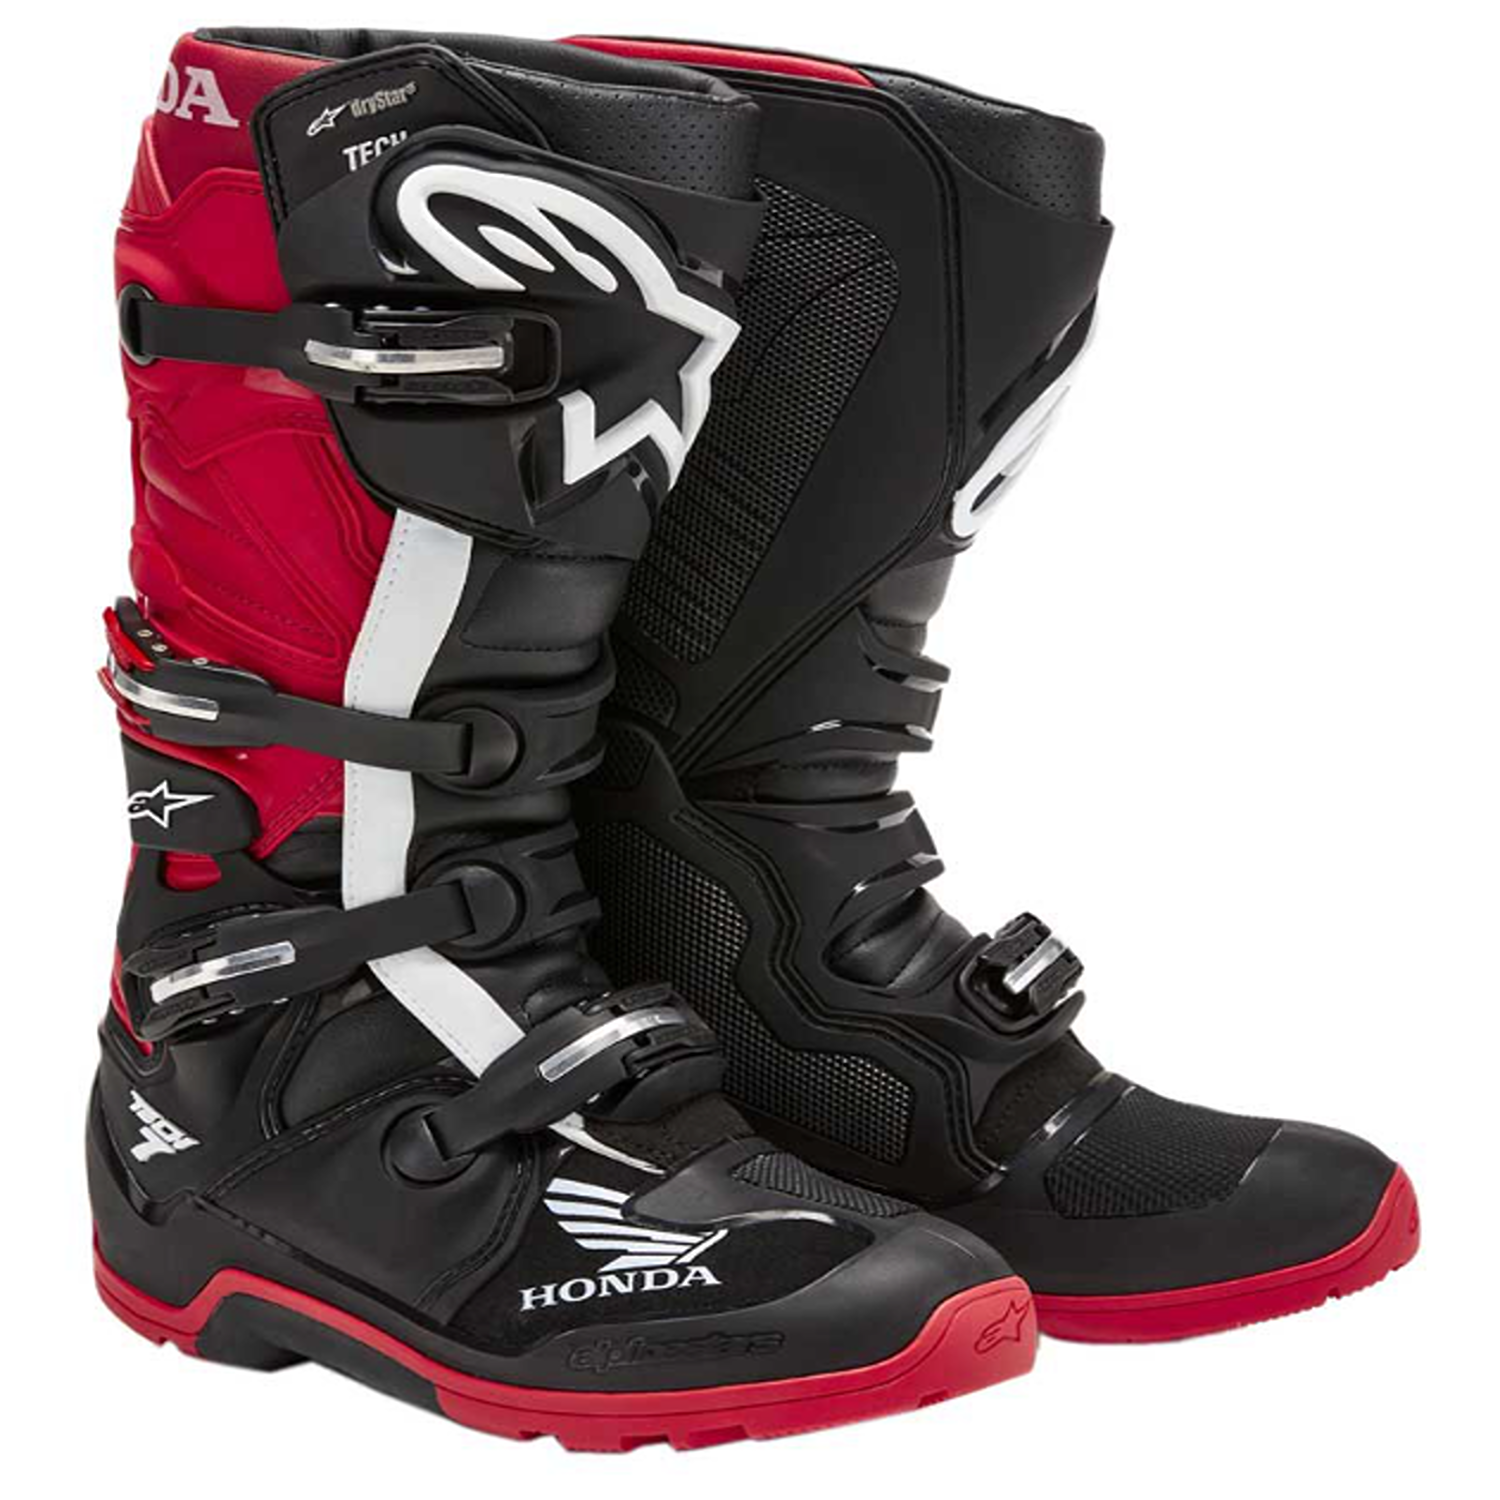 Image of Alpinestars Honda Tech 7 Enduro Drystar Boots Black Bright Red Größe US 9